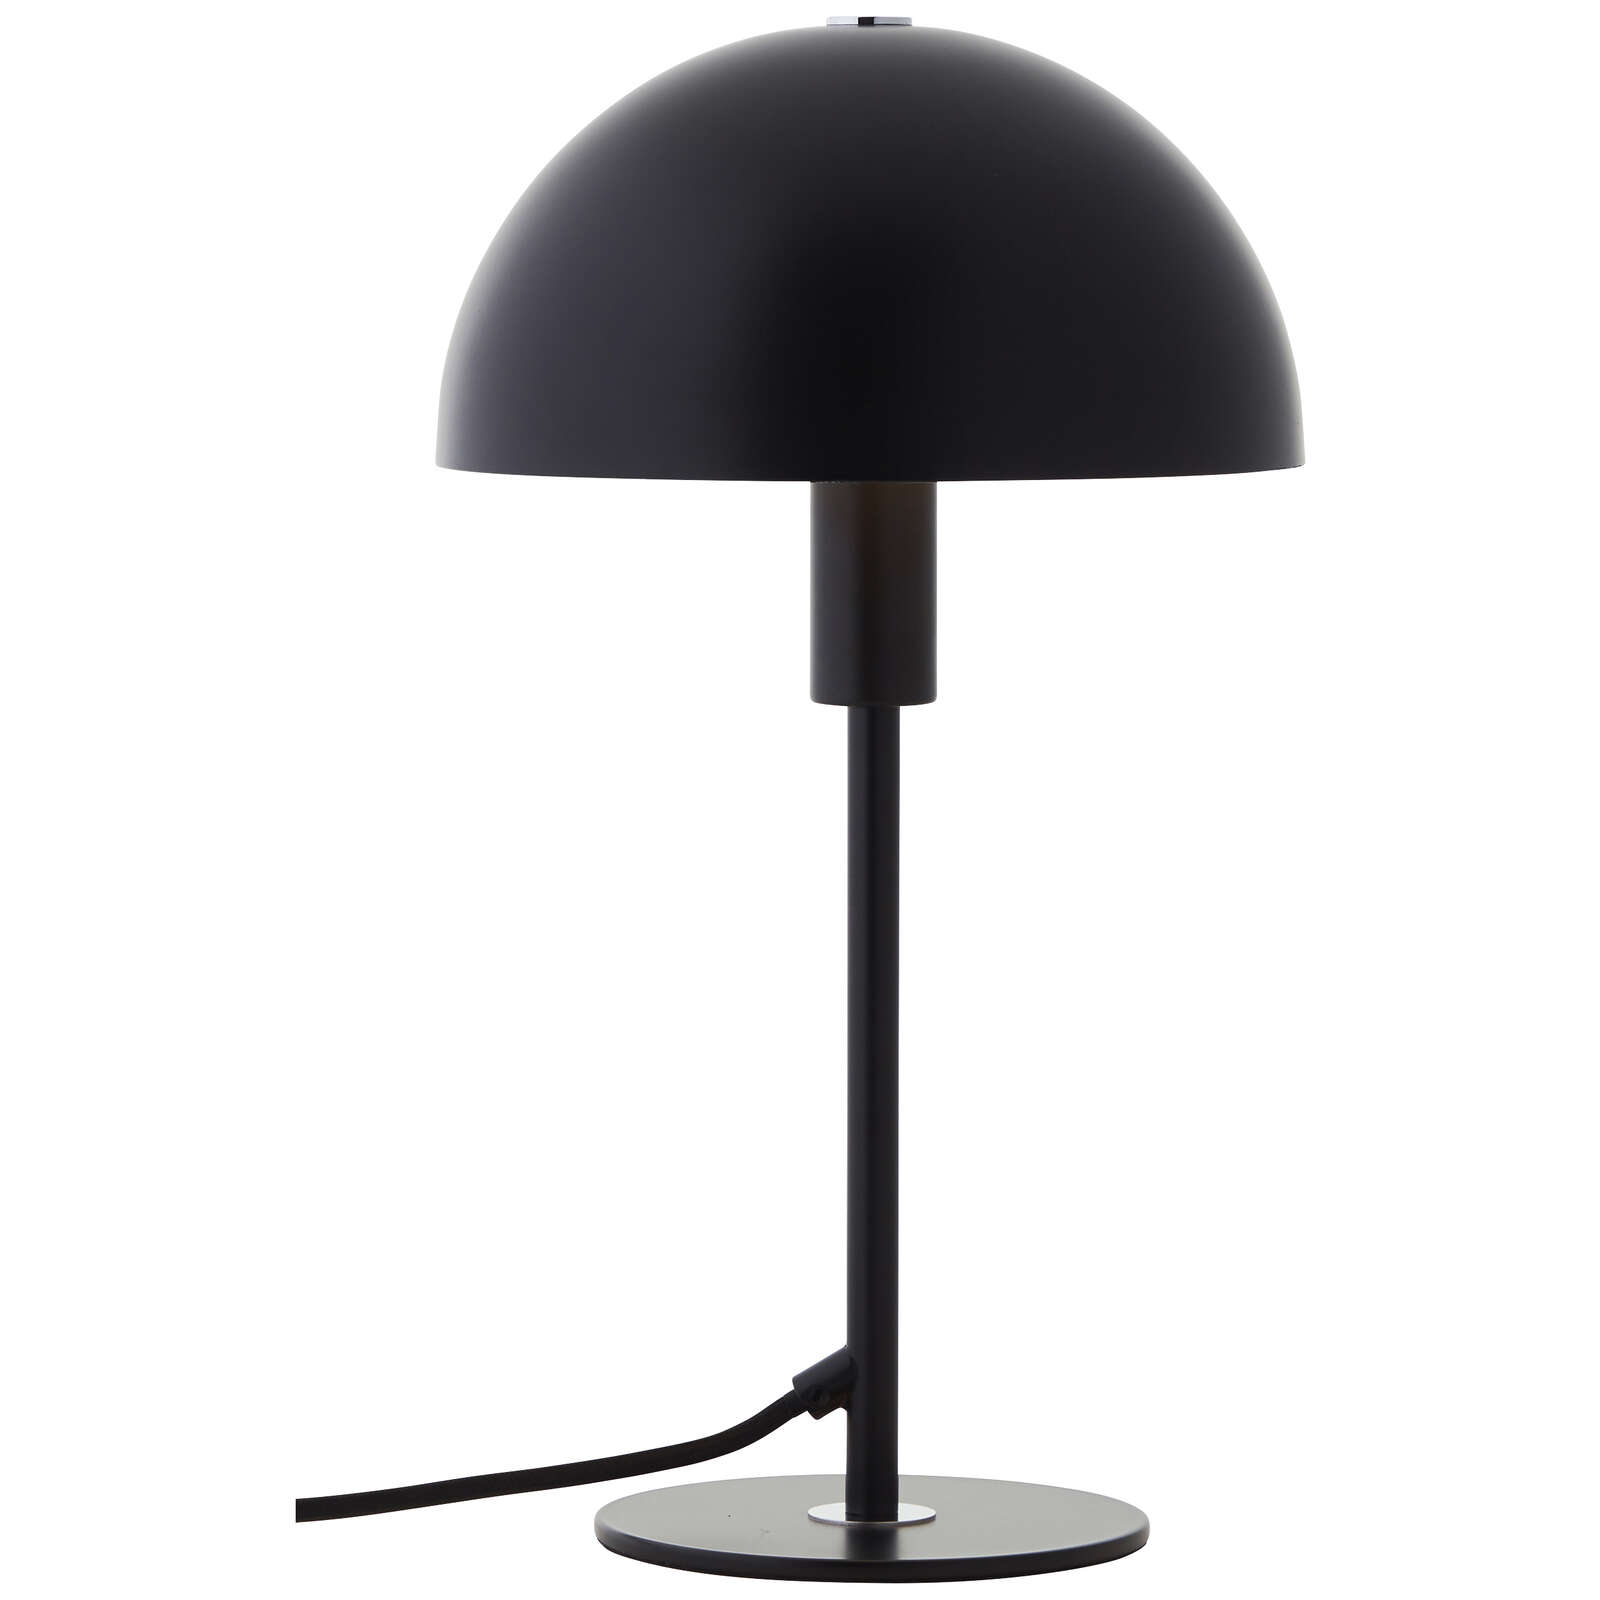             Metal table lamp - Lasse 4 - Black
        